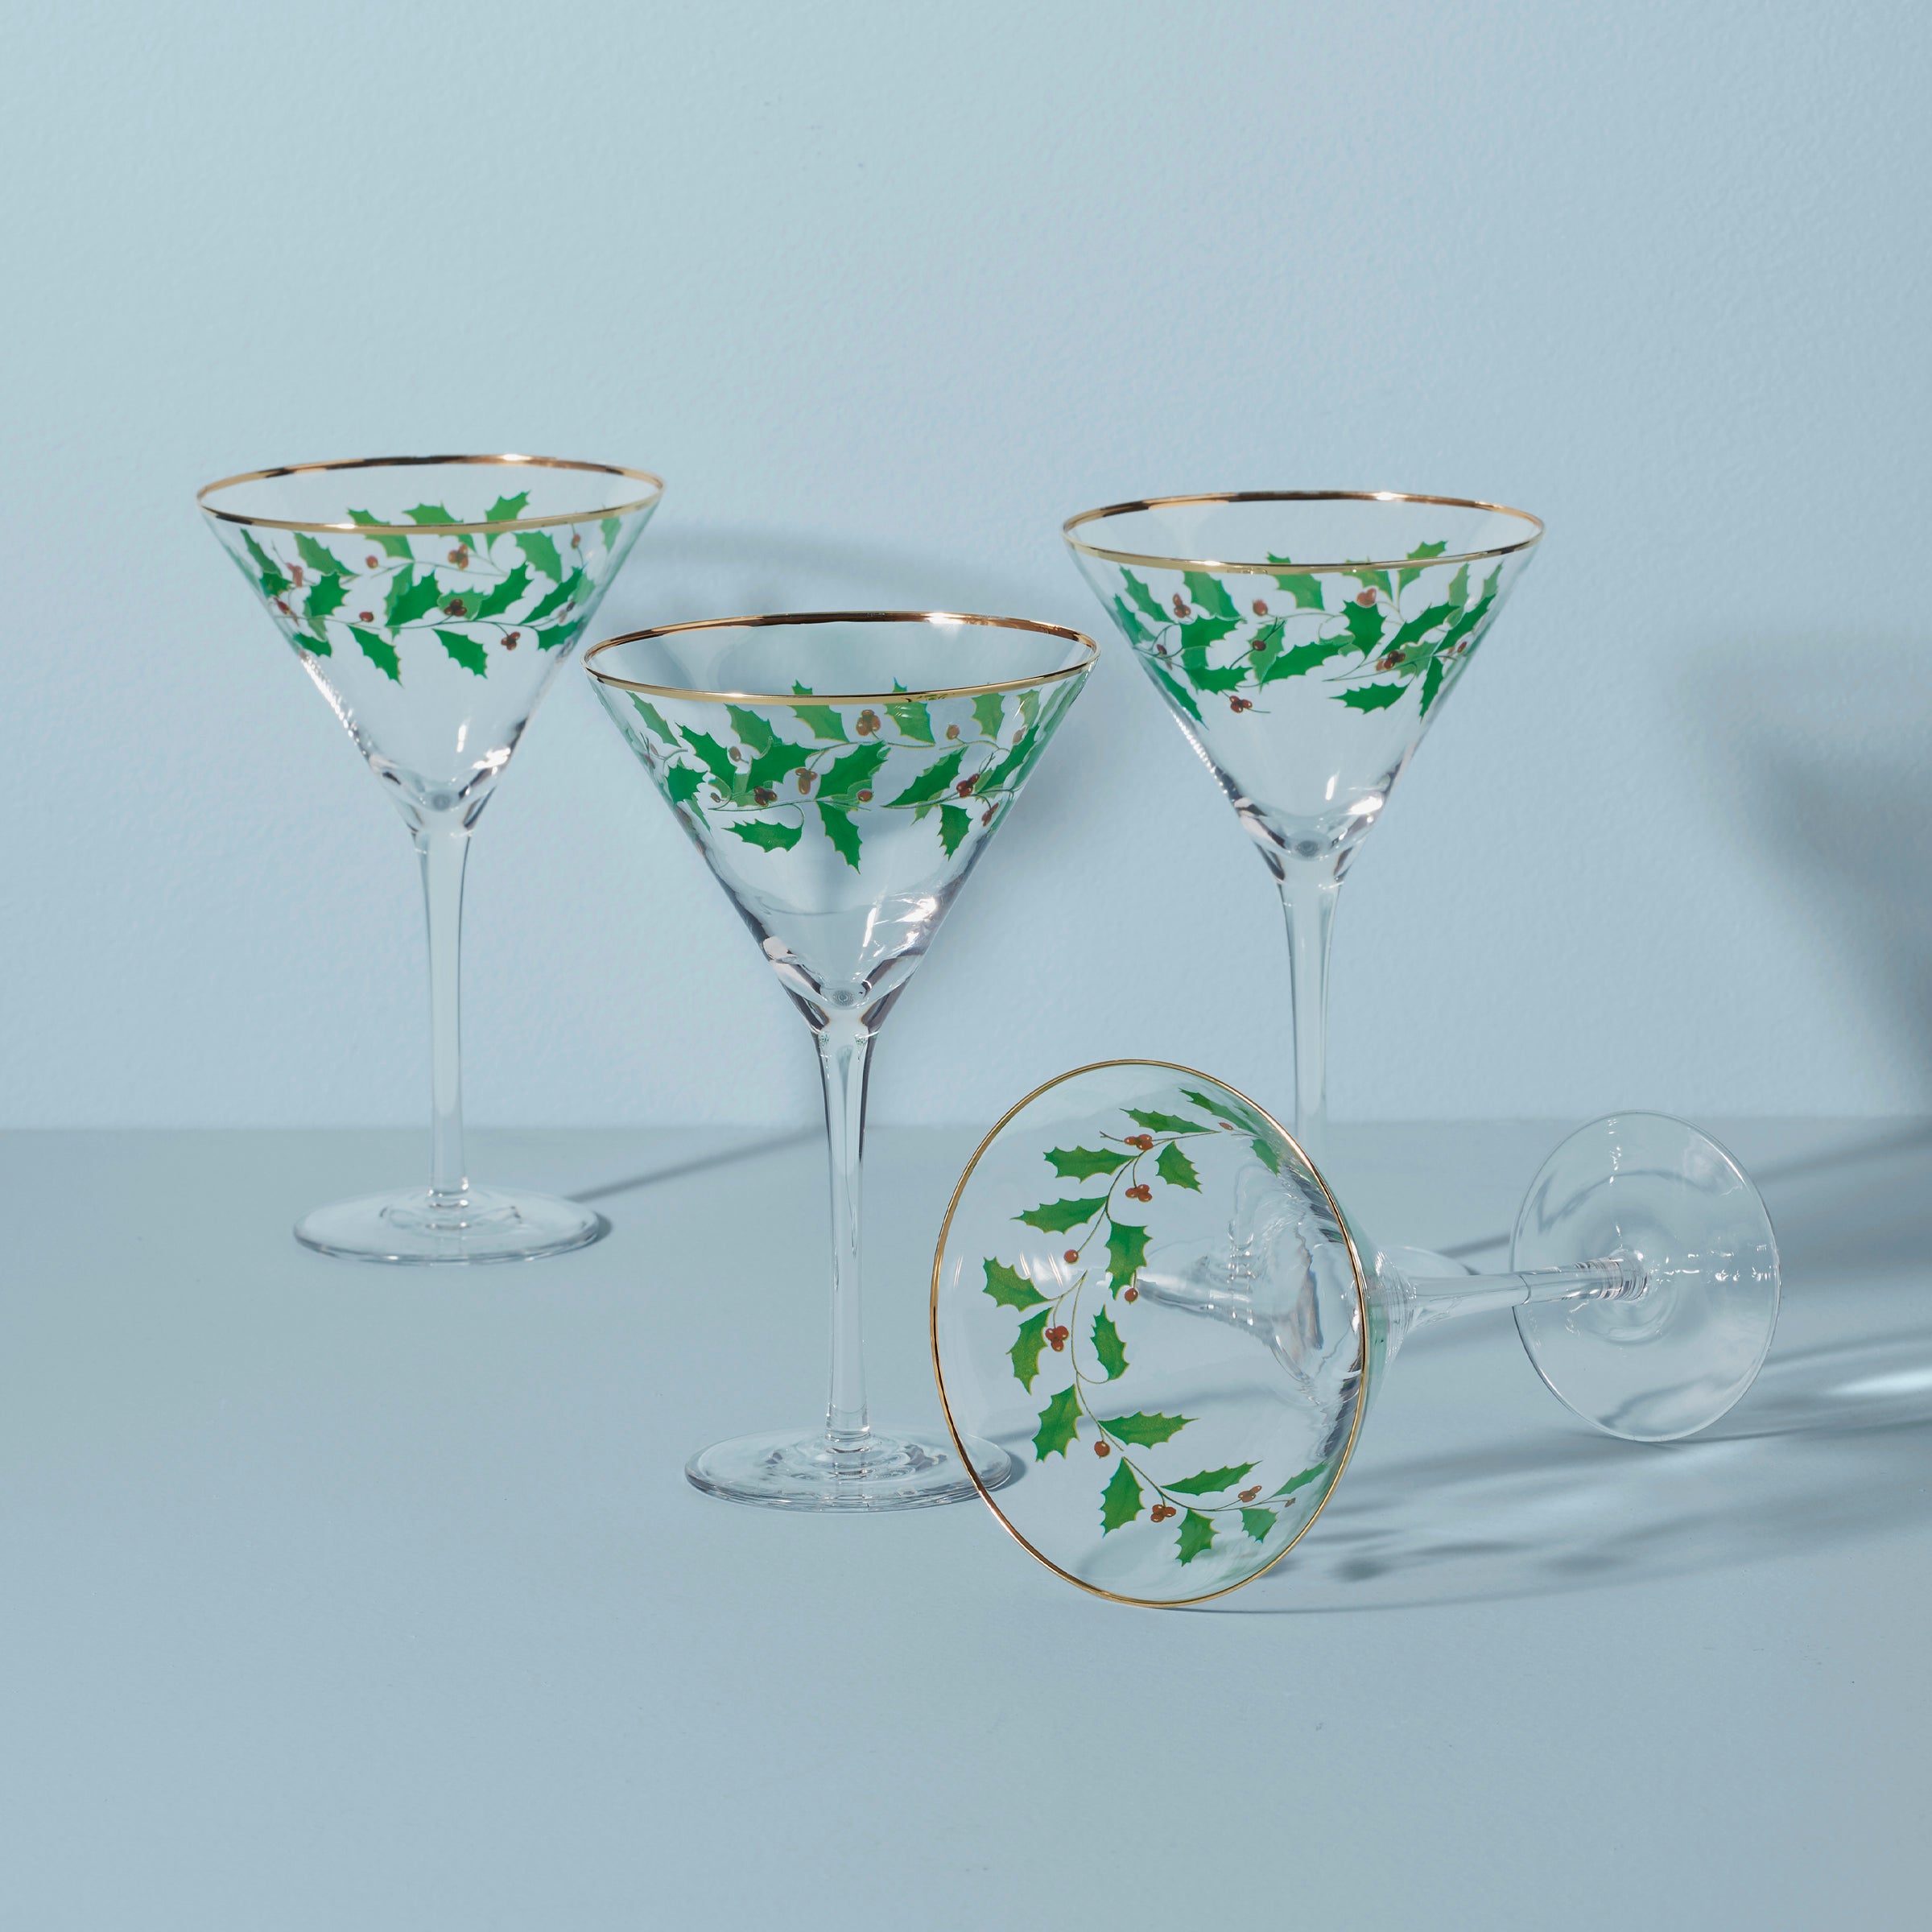 Martini Glassware, Cheap Martini Glasses, Personalized Martini Glass